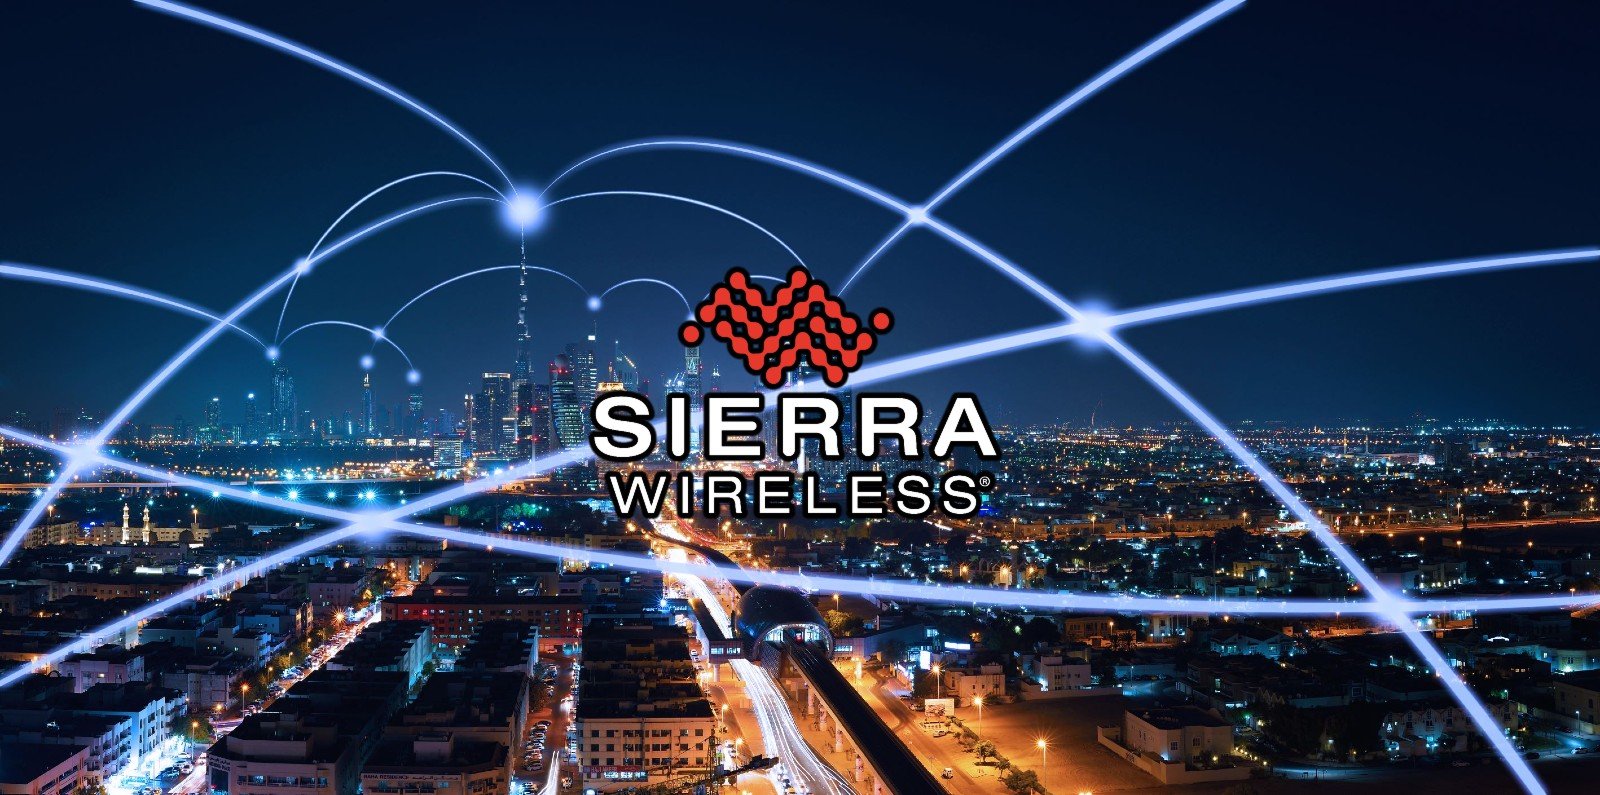 Атака вымогательского ПО сорвала производство оборудования Sierra Wireless